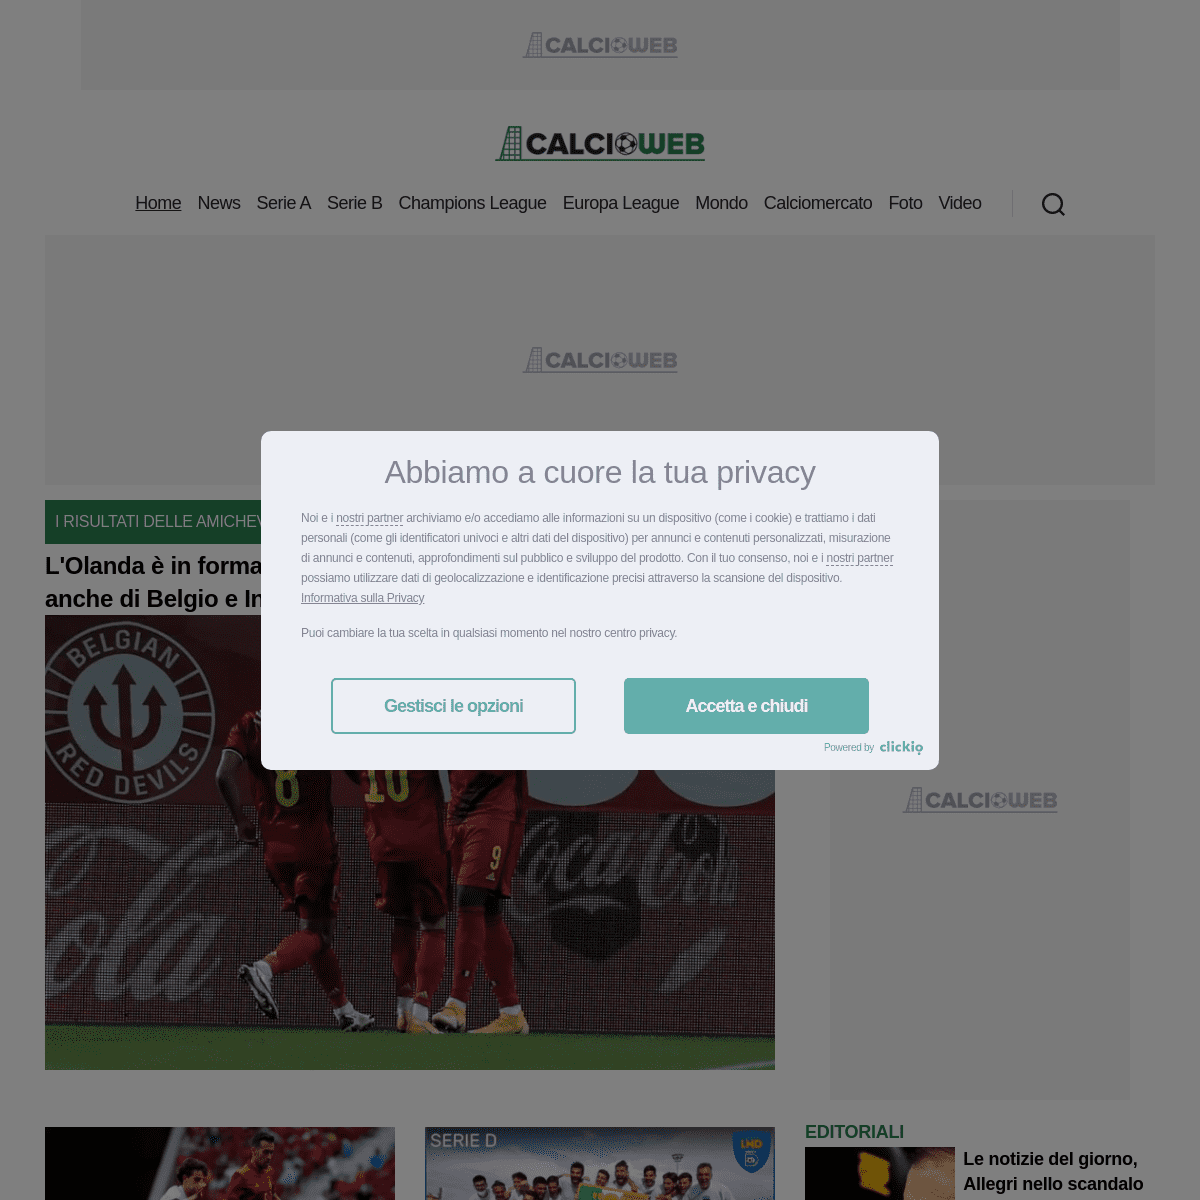 A complete backup of https://calcioweb.eu